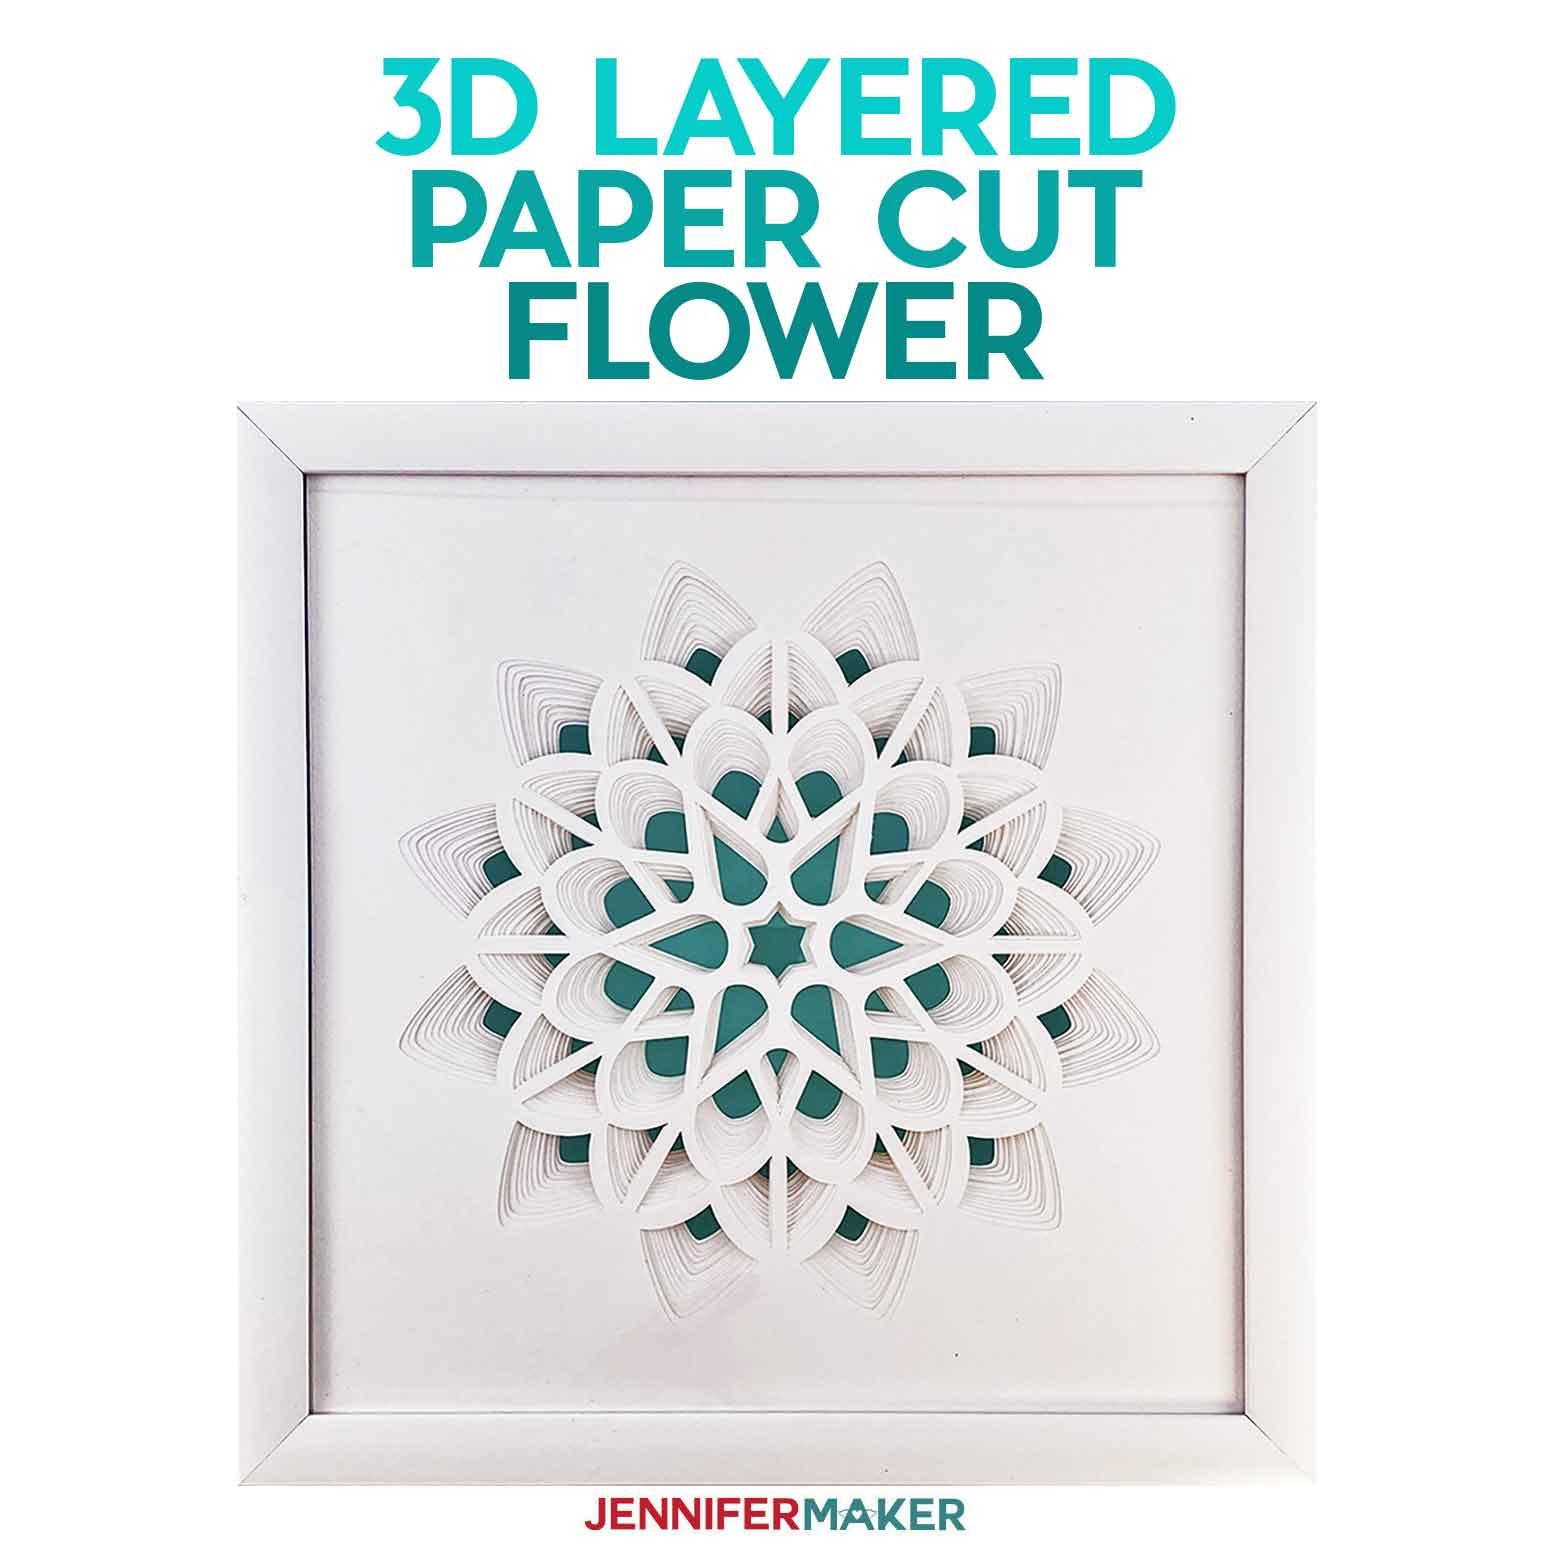 3d Layered Paper Cut Art The Flower Jennifer Maker